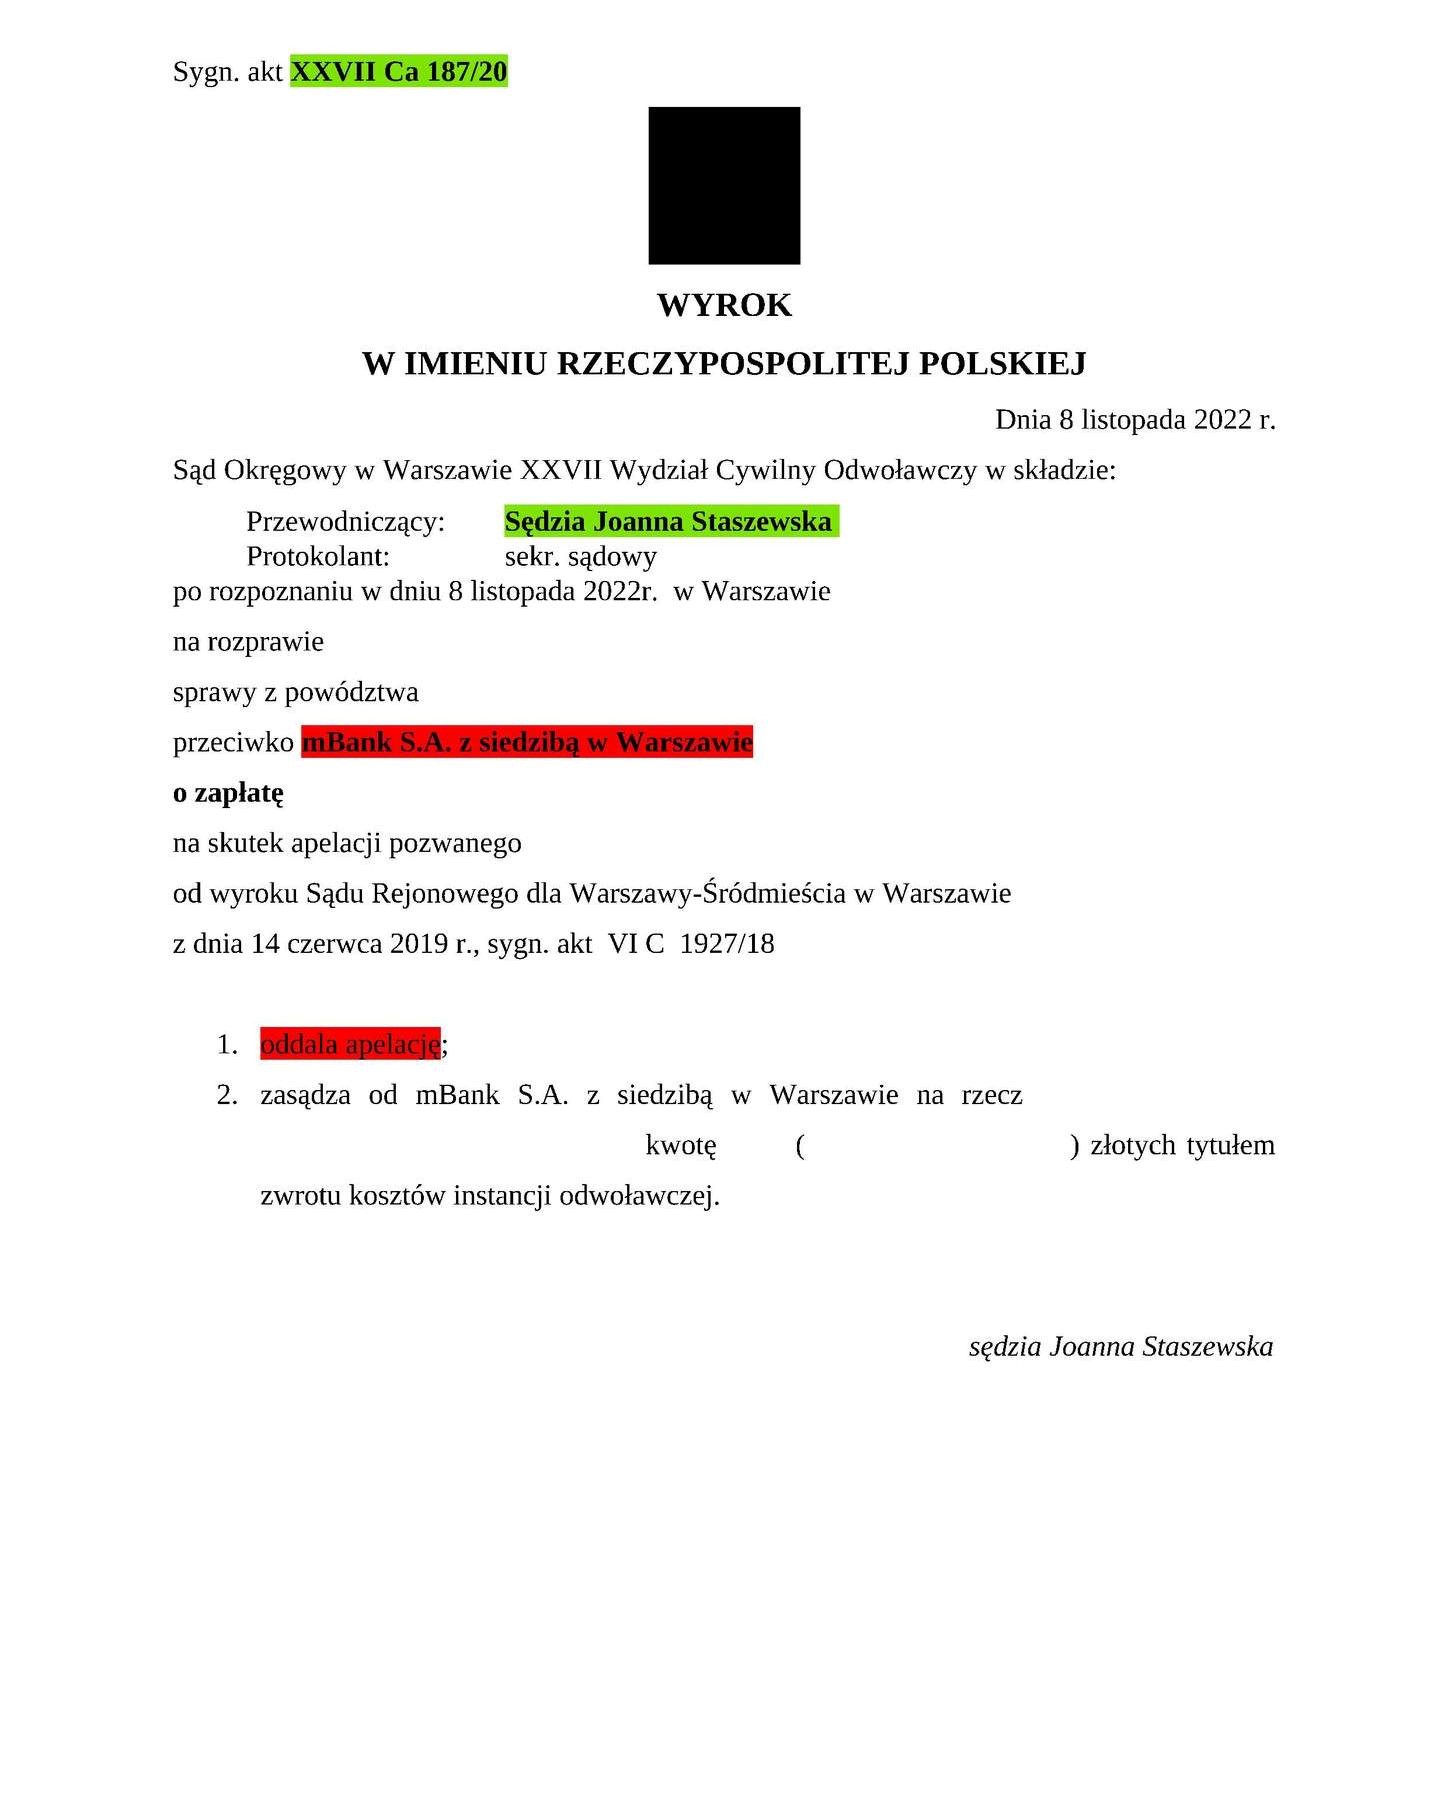 Wyrok Sądu Okręgowego w Warszawie z dnia 08.11.2022 r., sygn. akt XXVII Ca 187/20